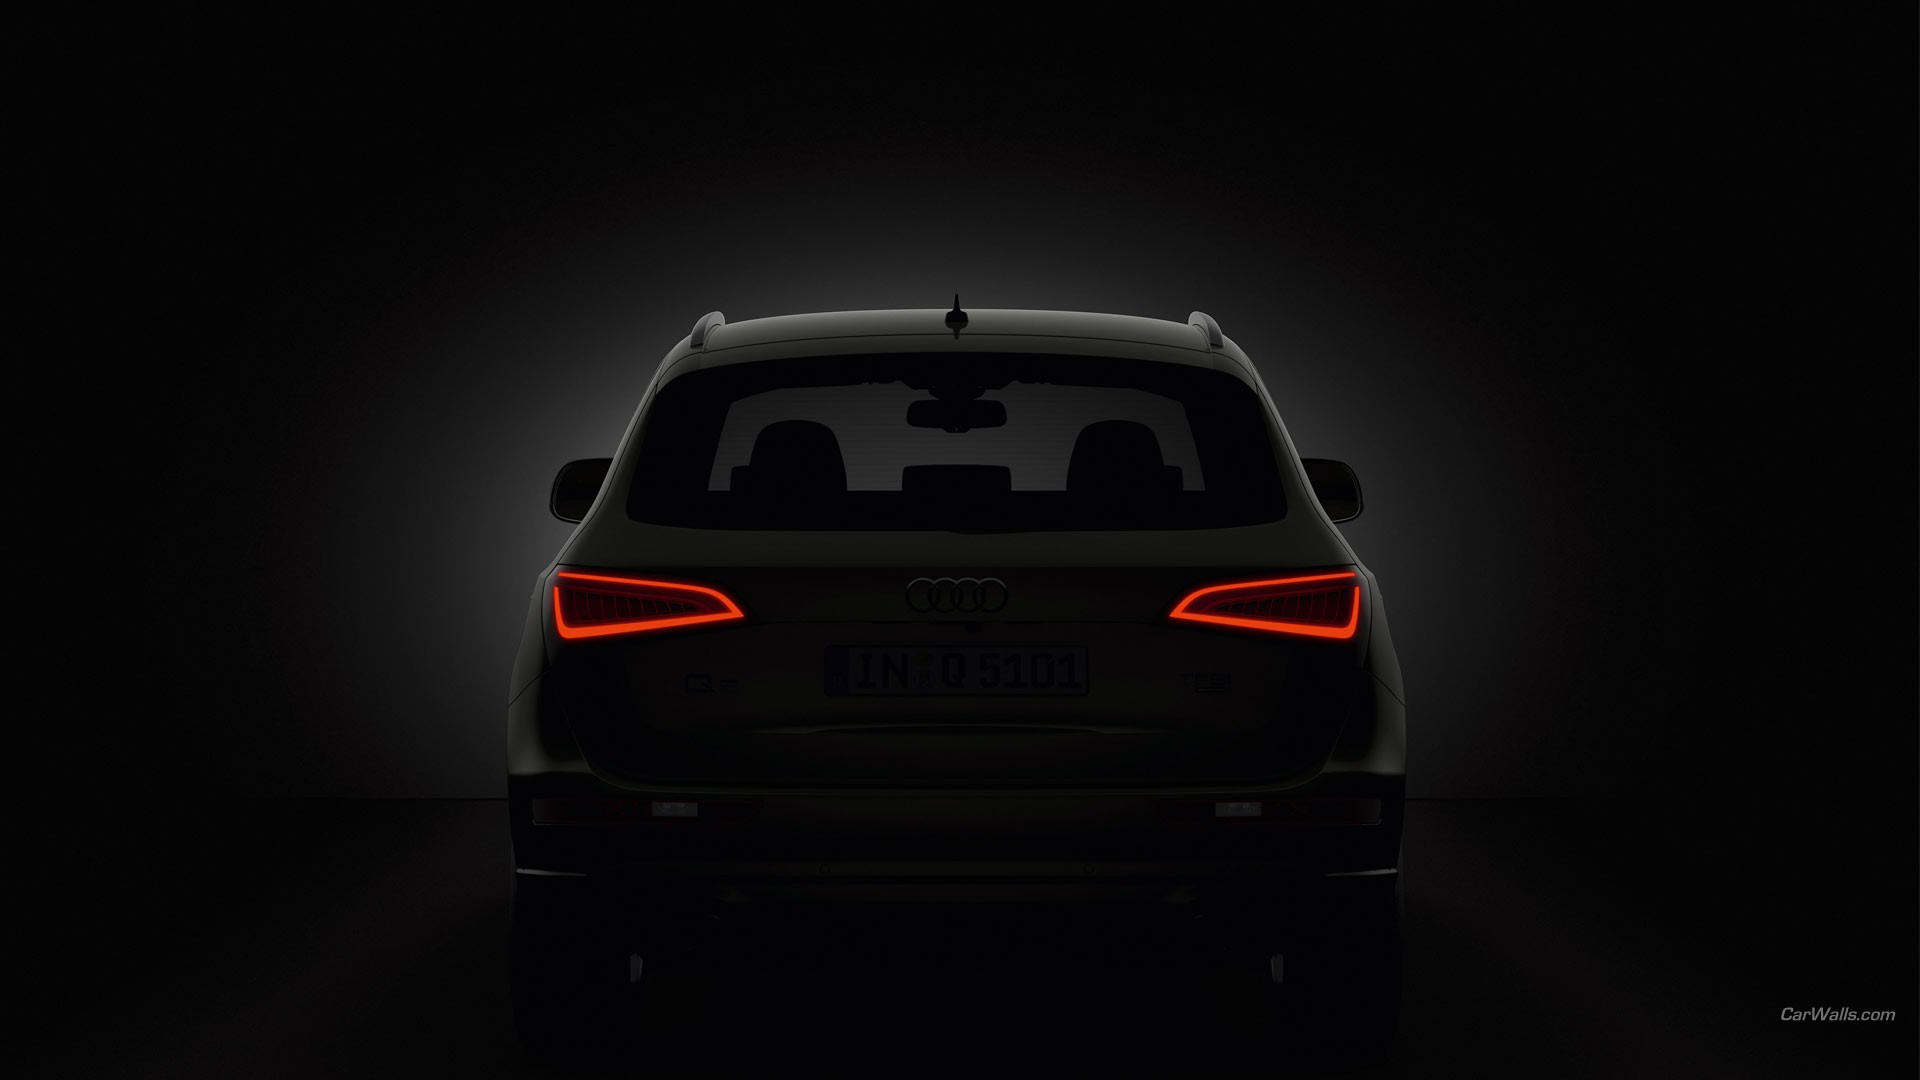 Audi Q5 rear optics in darkness